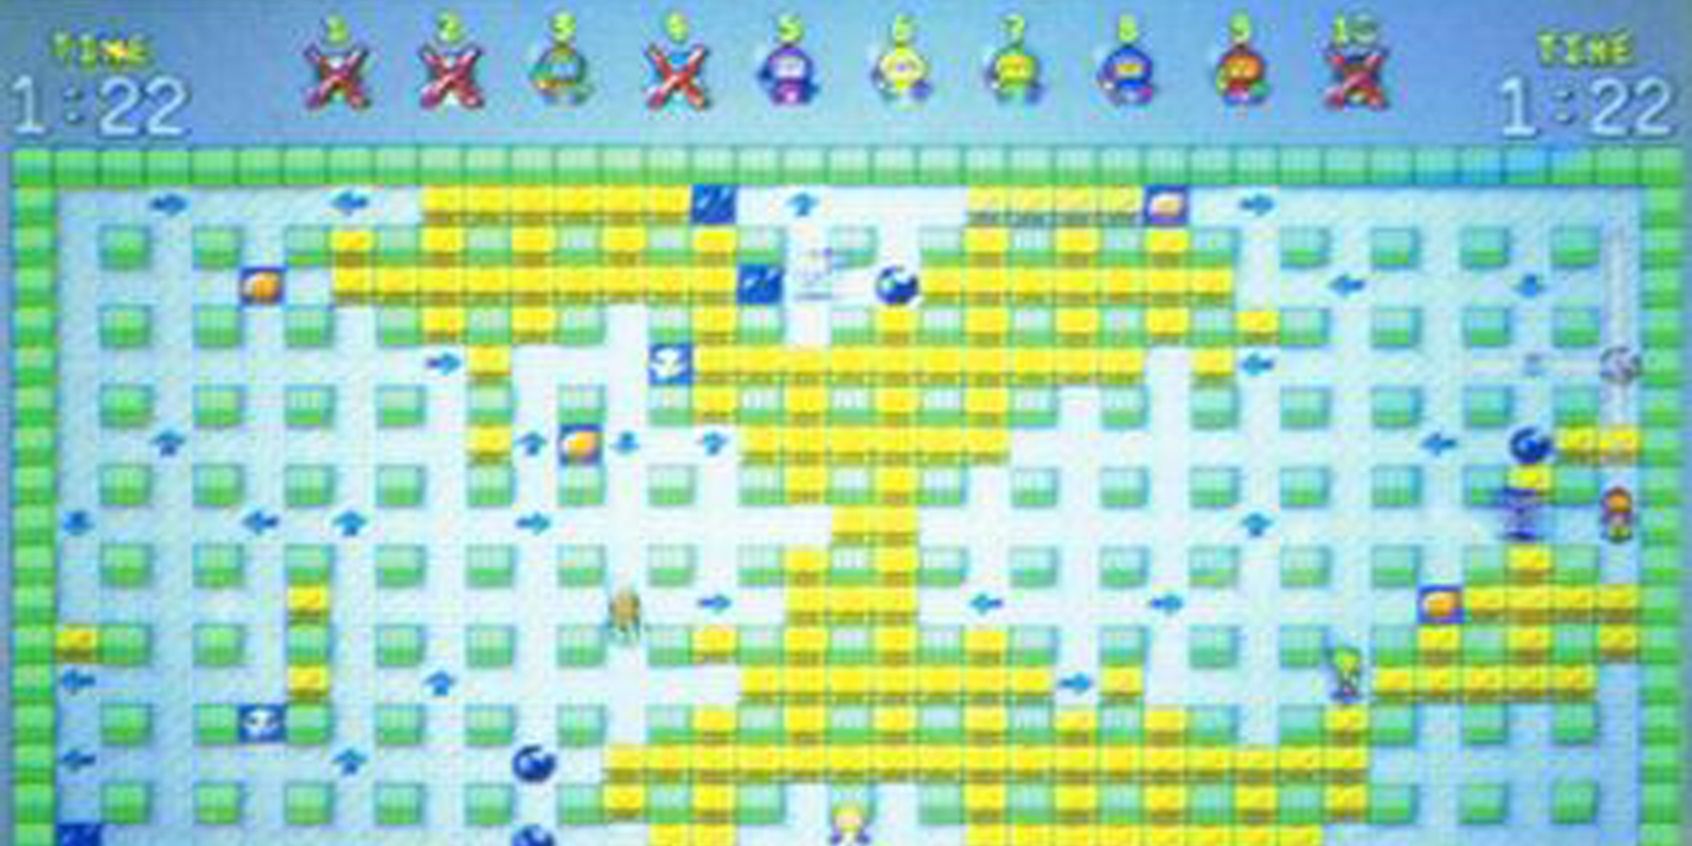 Hi-Ten_Bomberman gameplay cropped screen shot